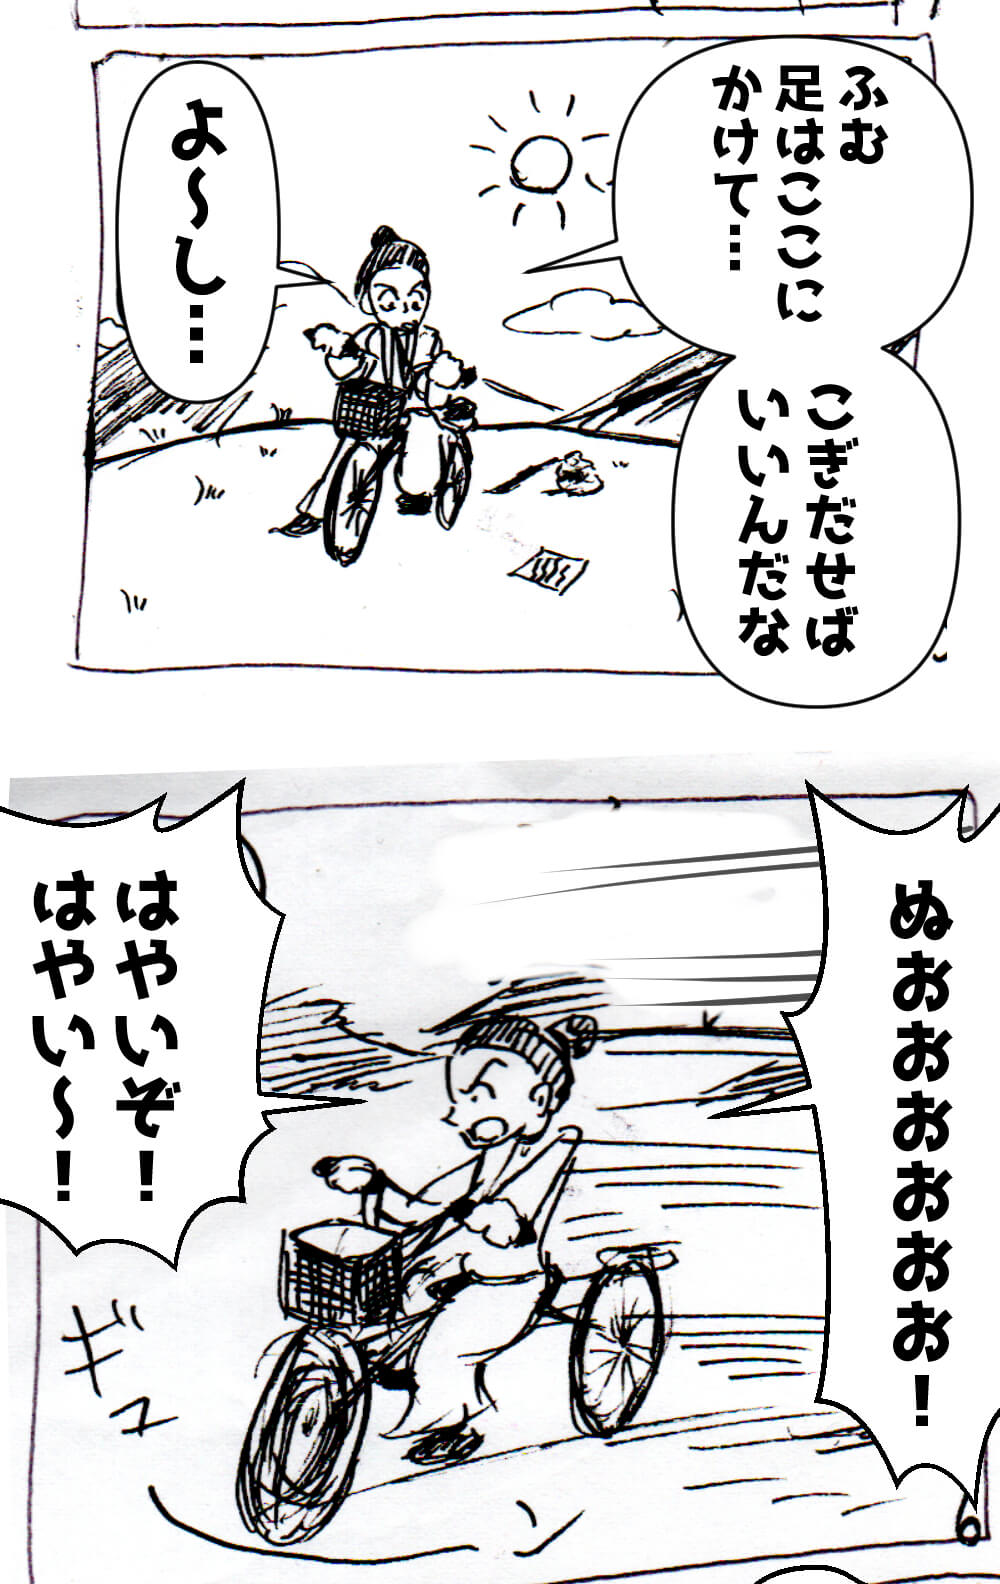 漫画,自転車